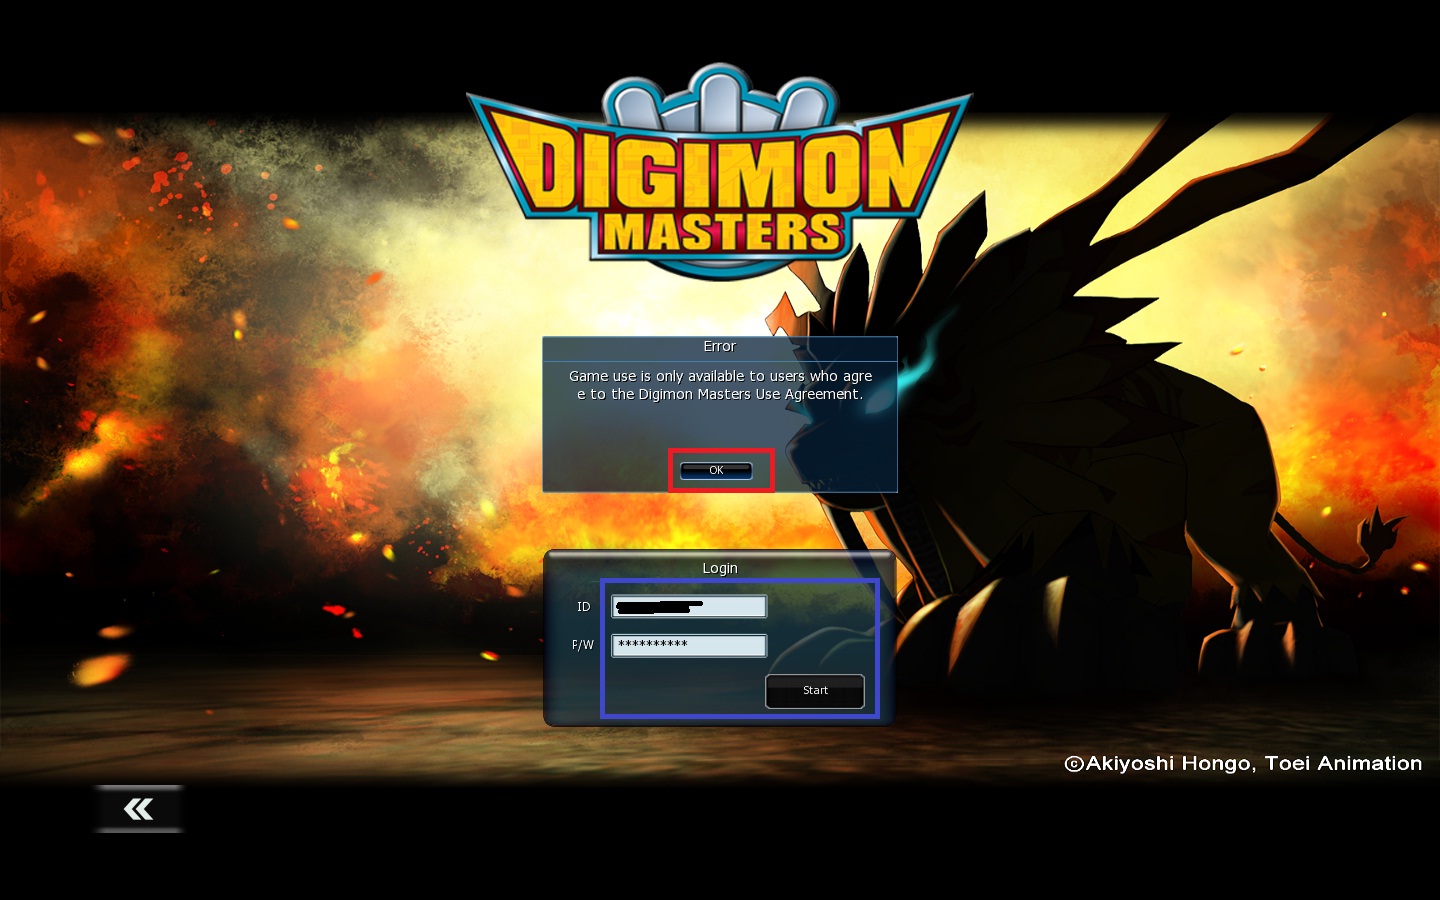  ## Digimon Masters Online (DMO) Rehberi ve Oyunda Atma Probleminin Çözümü ##